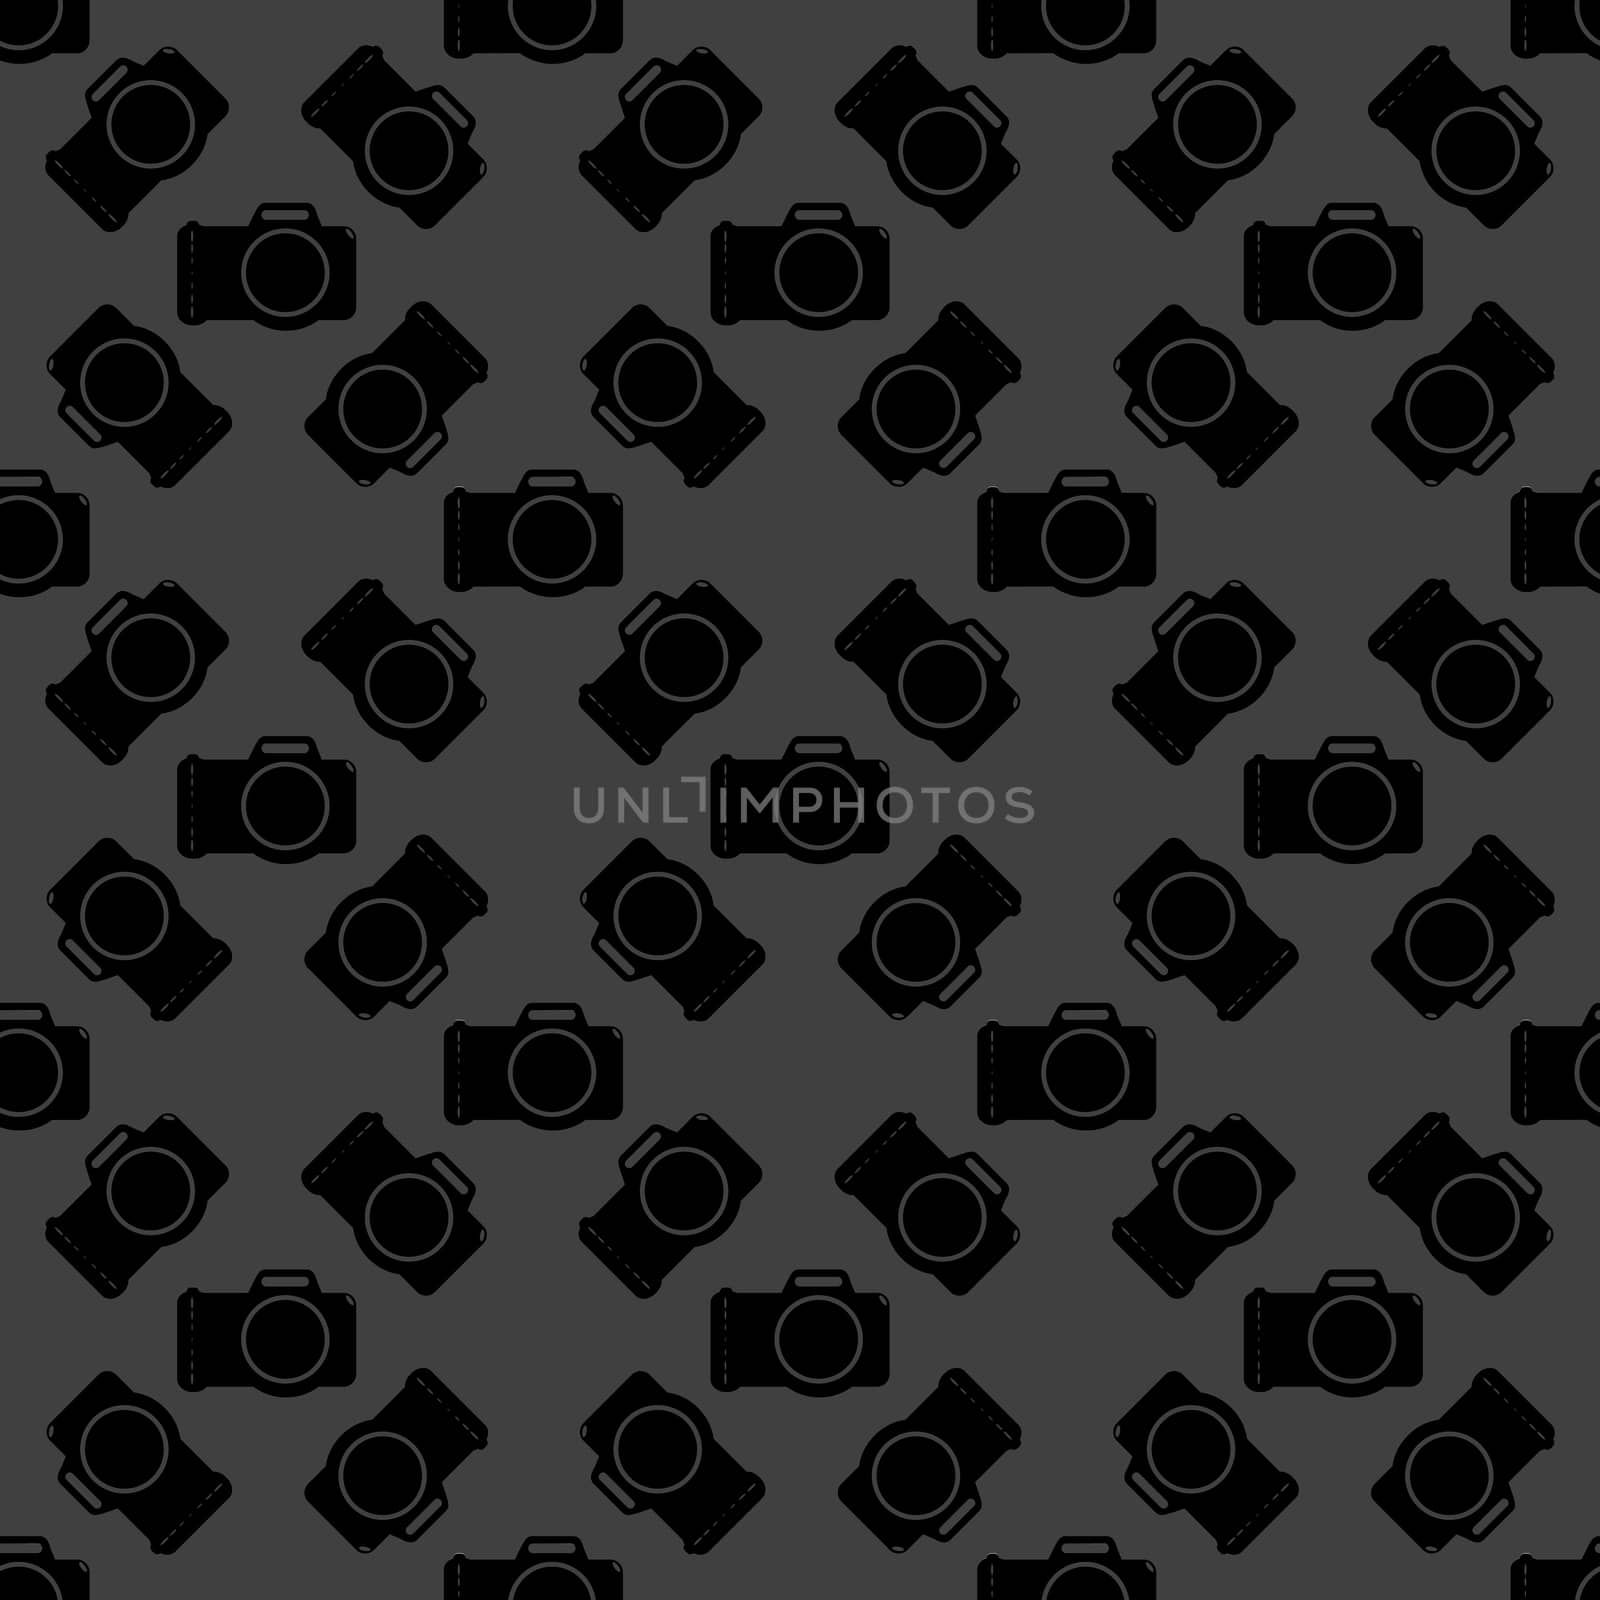 Photo camera web icon. flat design. Seamless gray pattern. by serhii_lohvyniuk